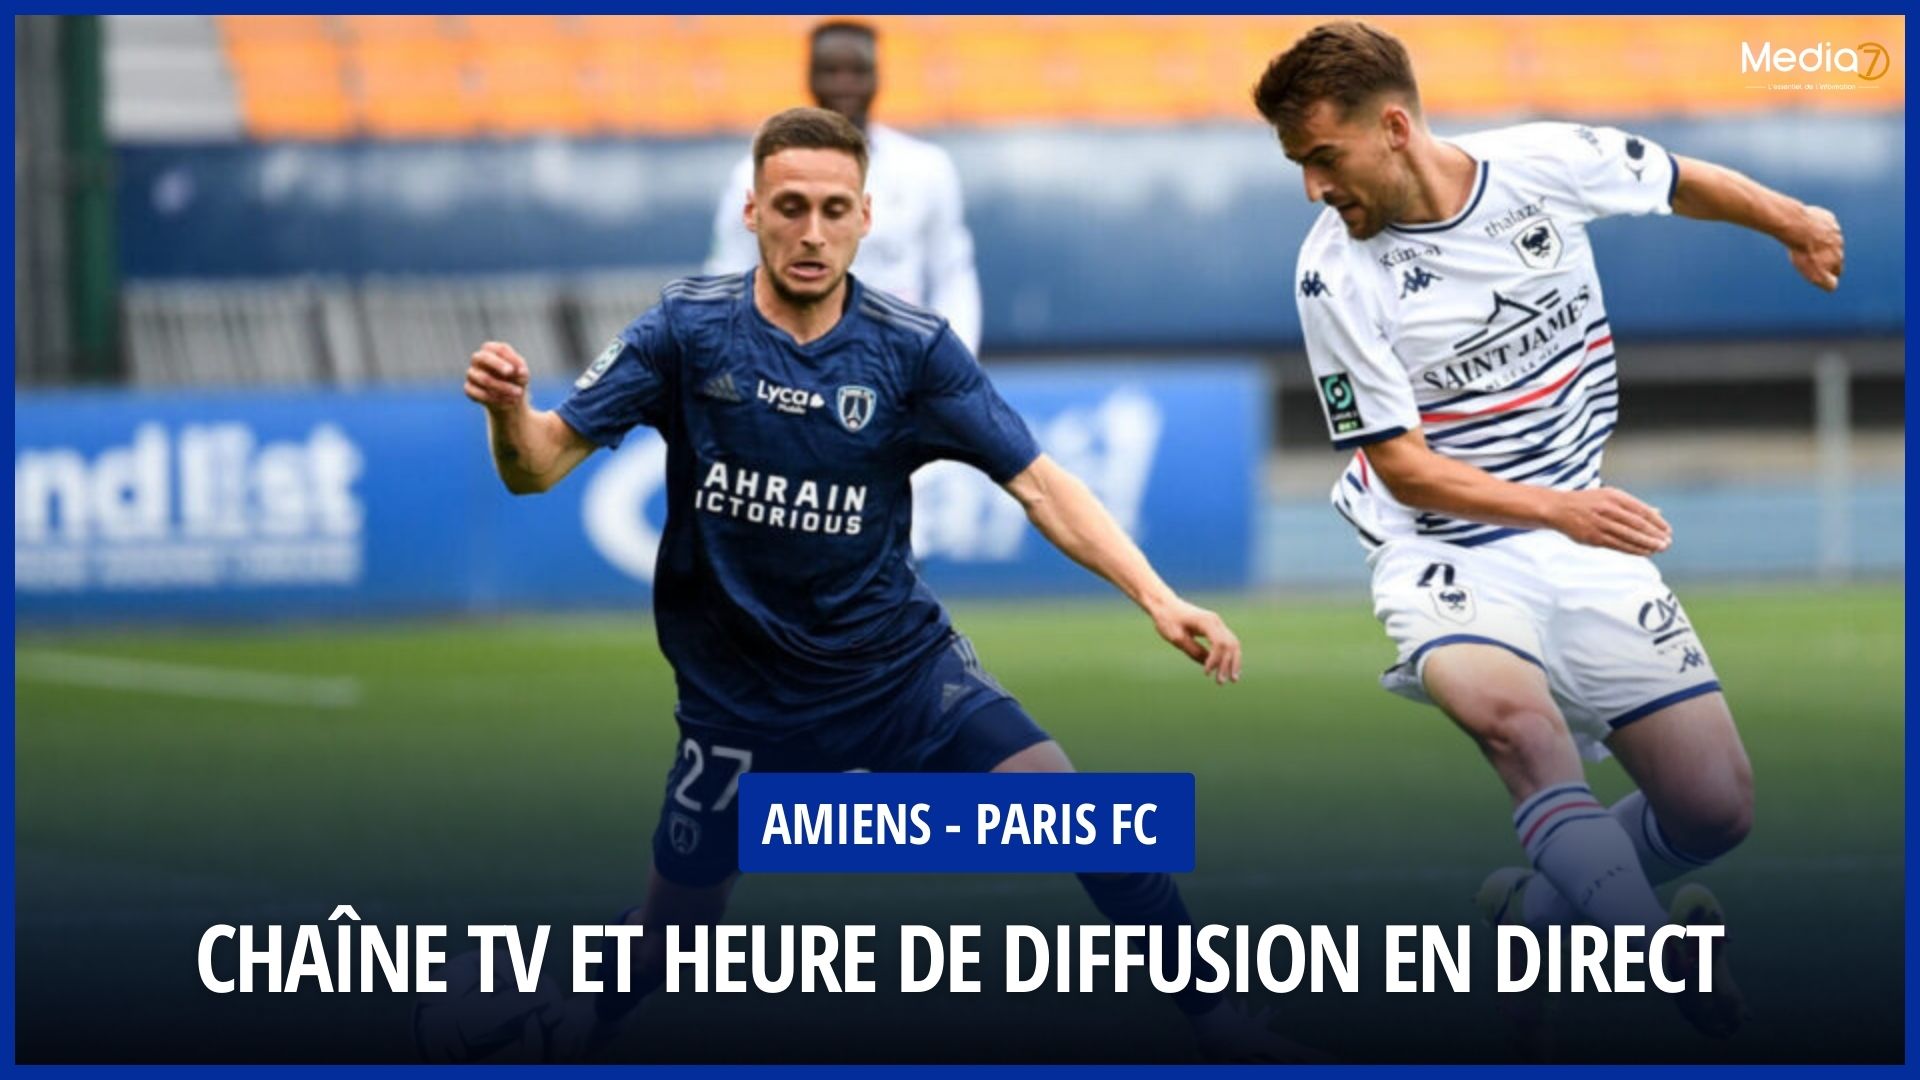 Amiens - Paris FC